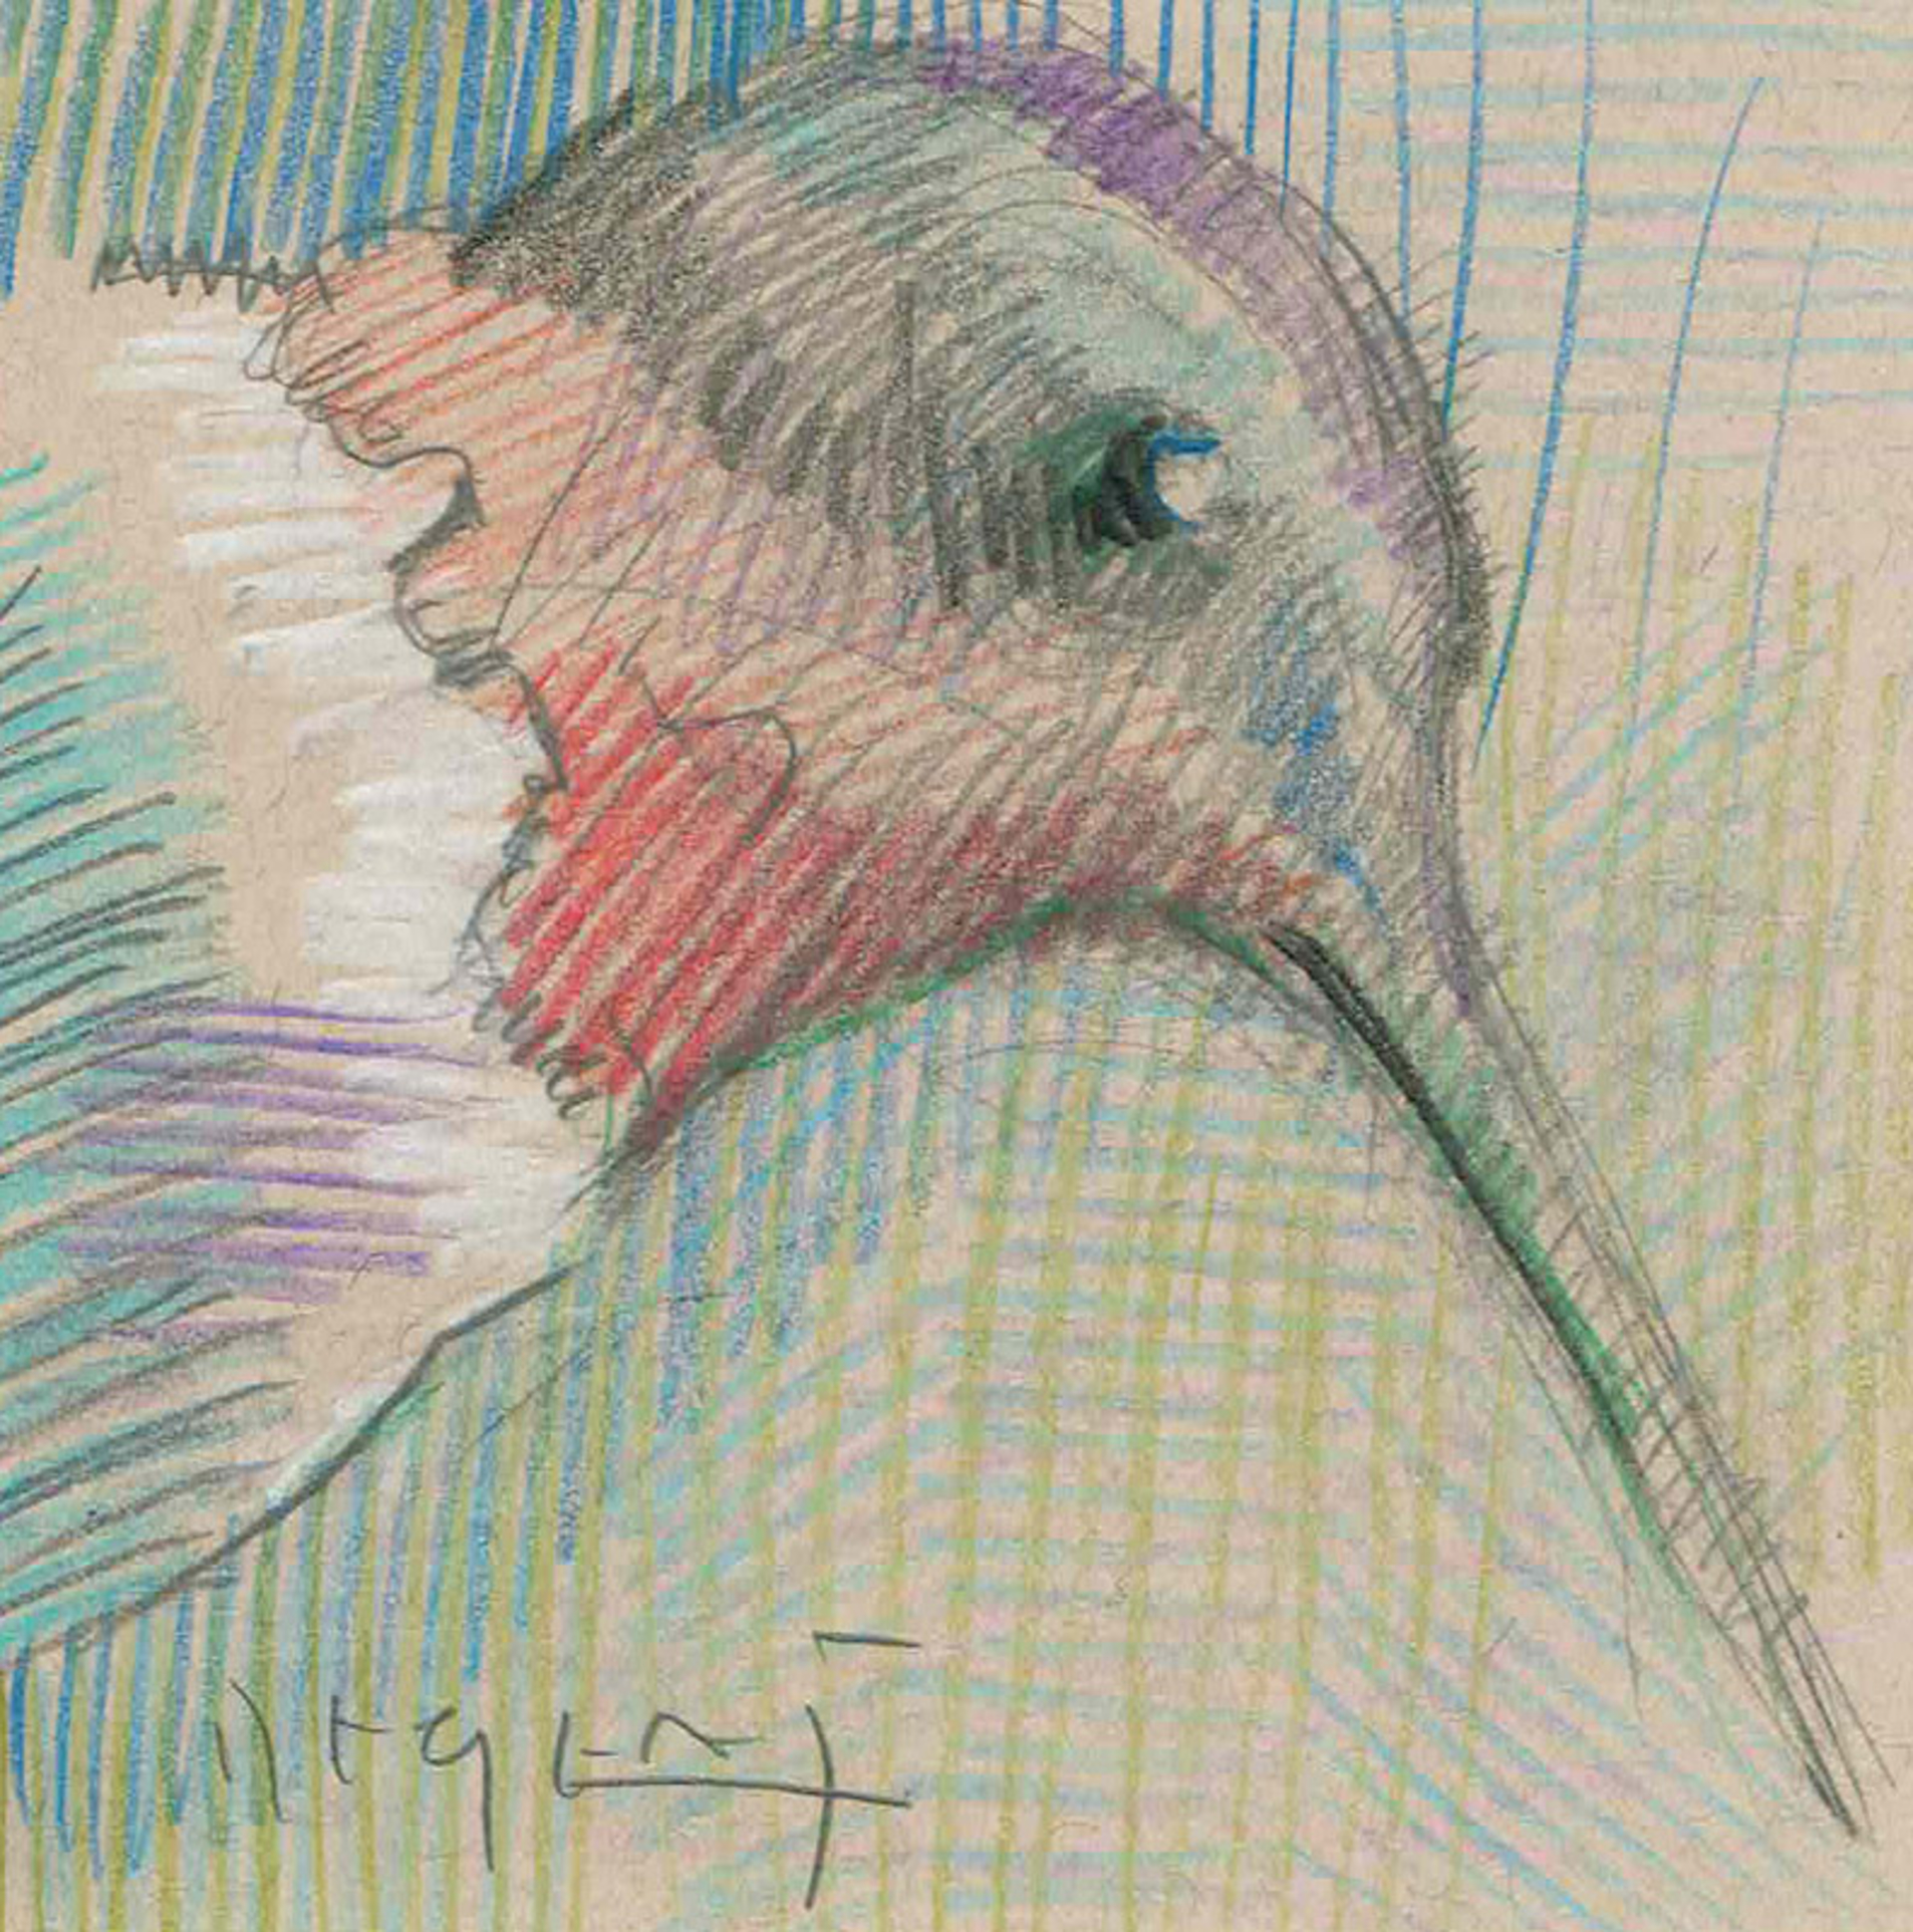 Mini Farm: Hummingbird No. 1 by Tim Jaeger